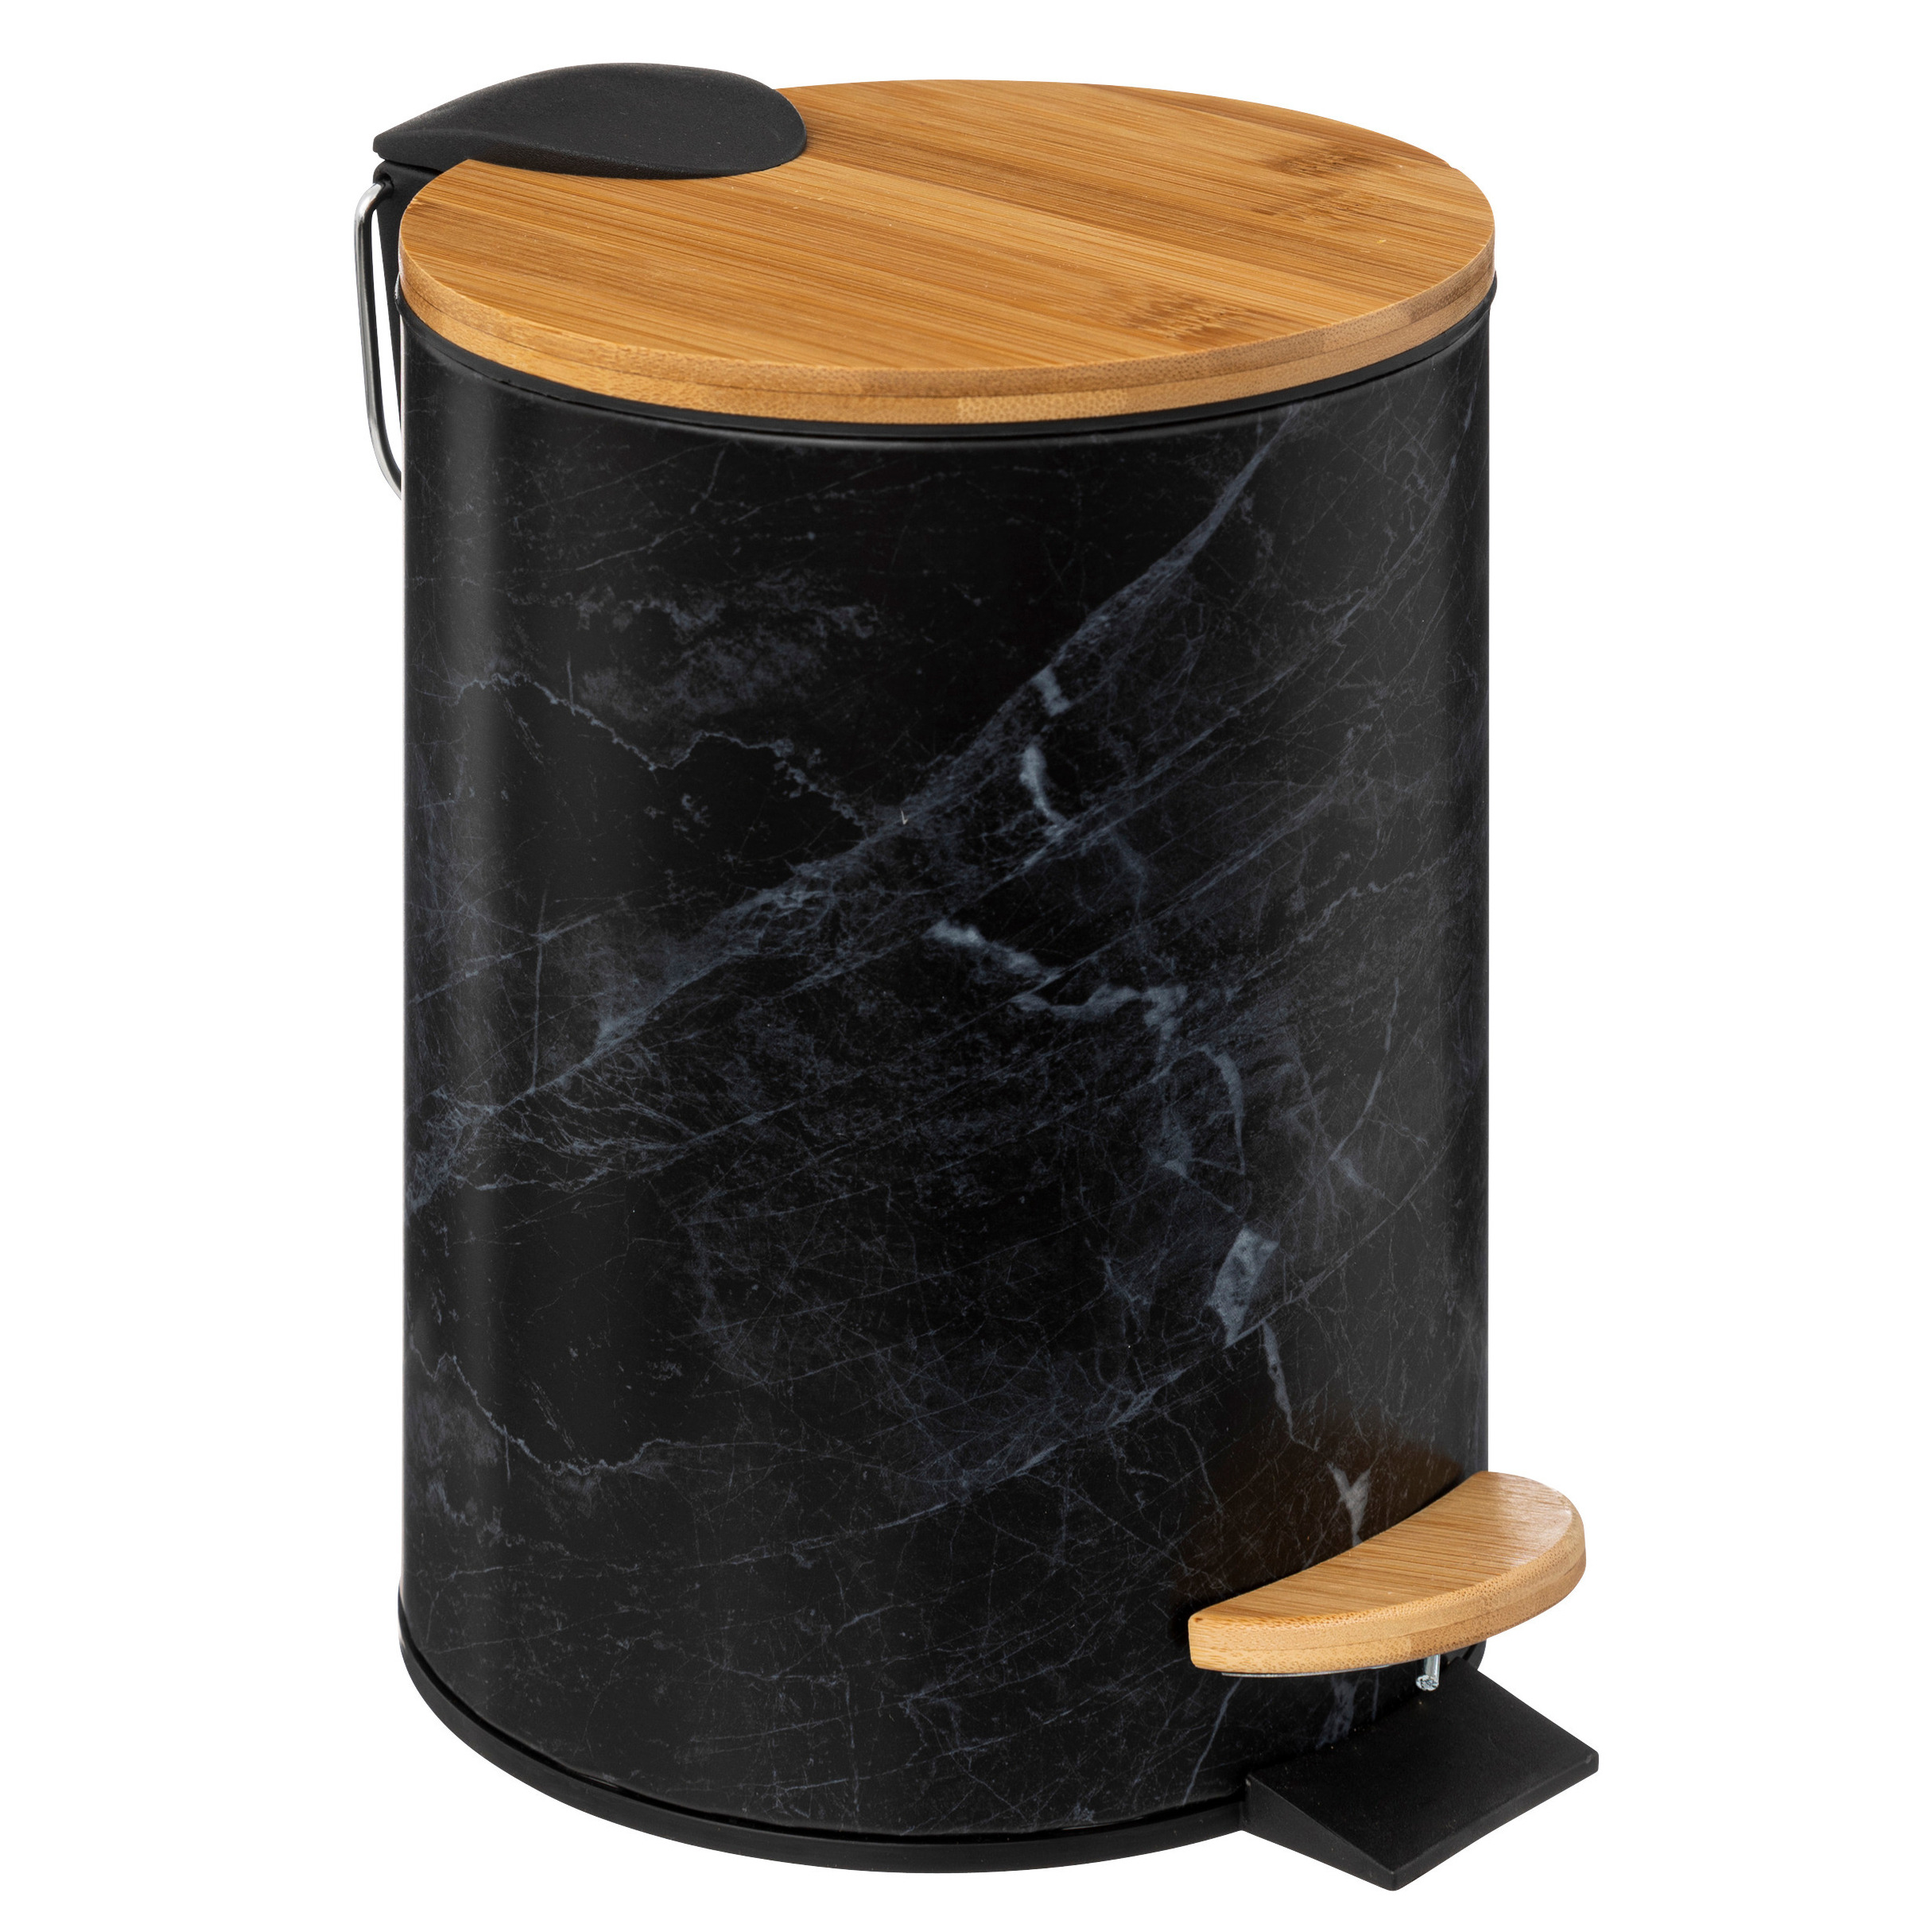 Prullenbak-pedaalemmer Marmer look zwart 3 liter metaal-bamboe 17 x 25 cm